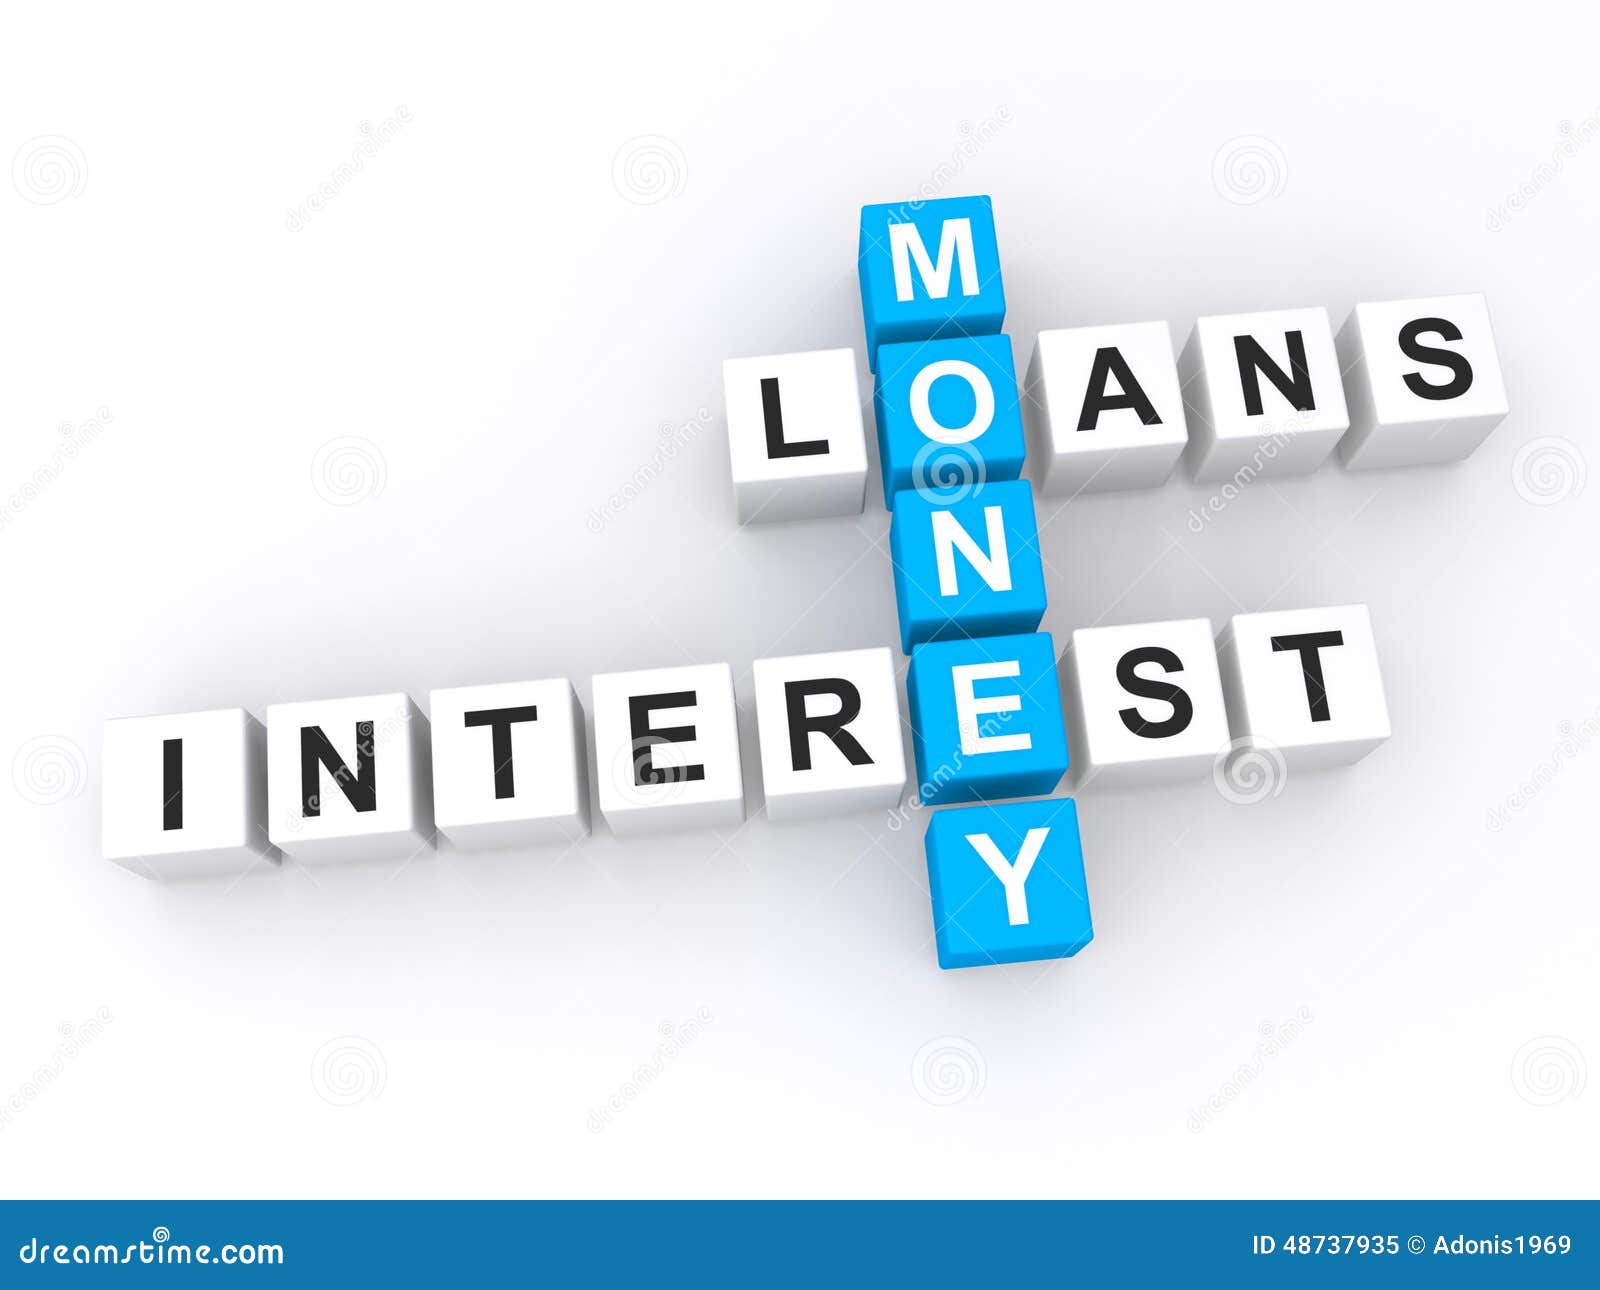 money-loans-interest-d-letter-blocks-crossword-puzzle-shape-words-business-financial-concept-48737935.jpg